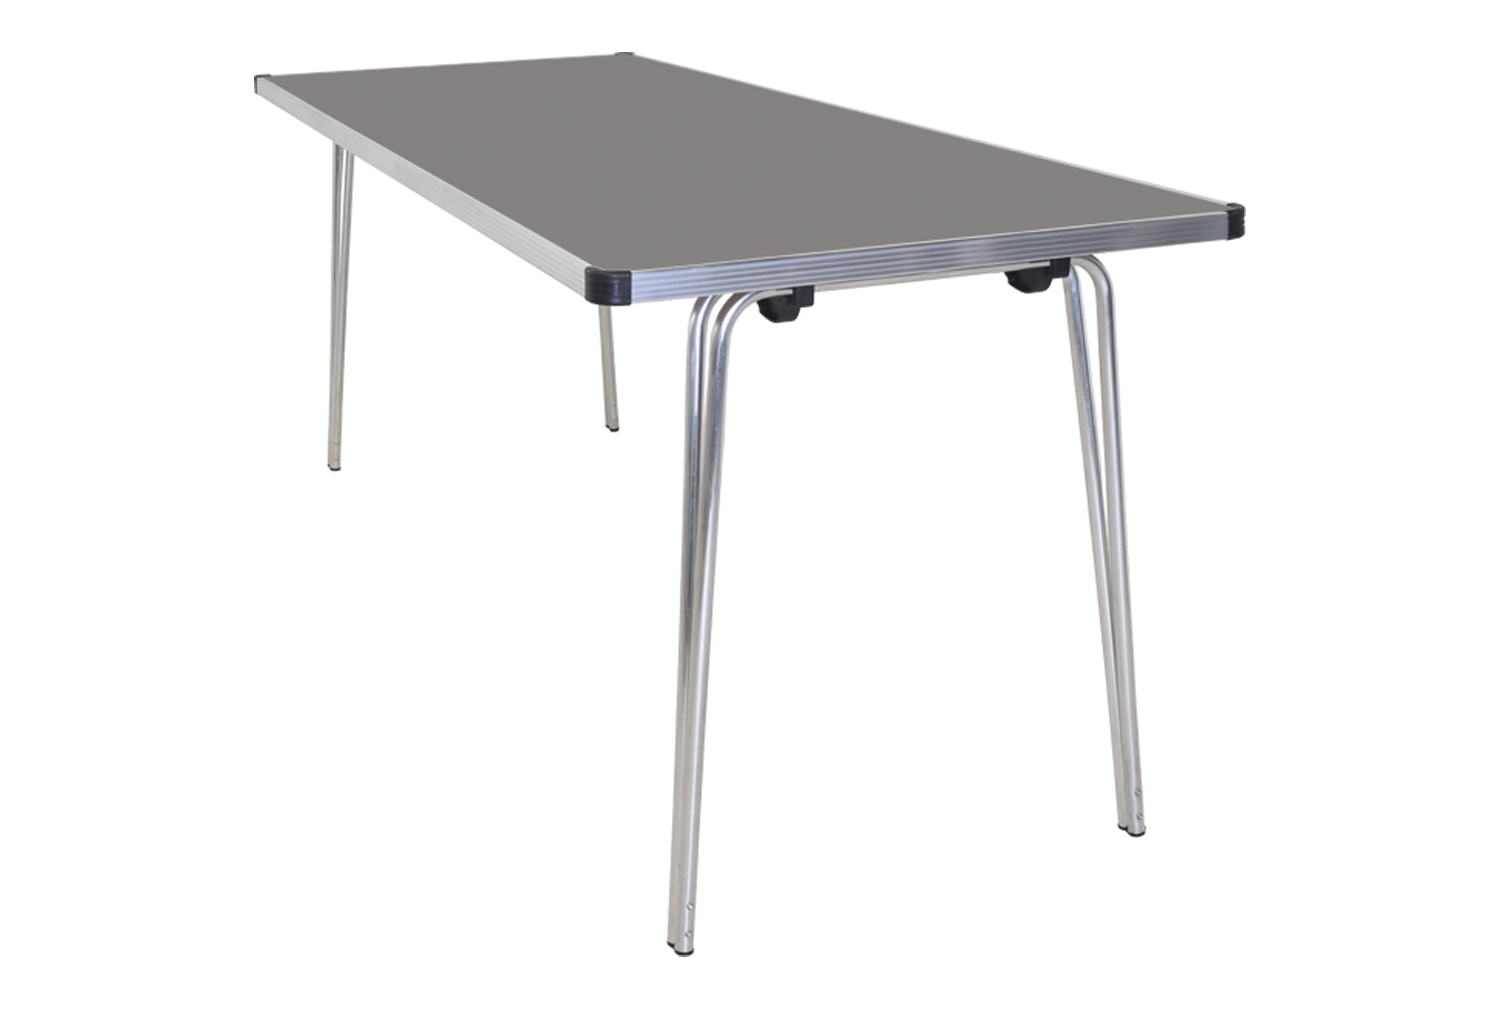 Gopak Contour Plus Folding Table, 122wx76d (cm), Storm Grey